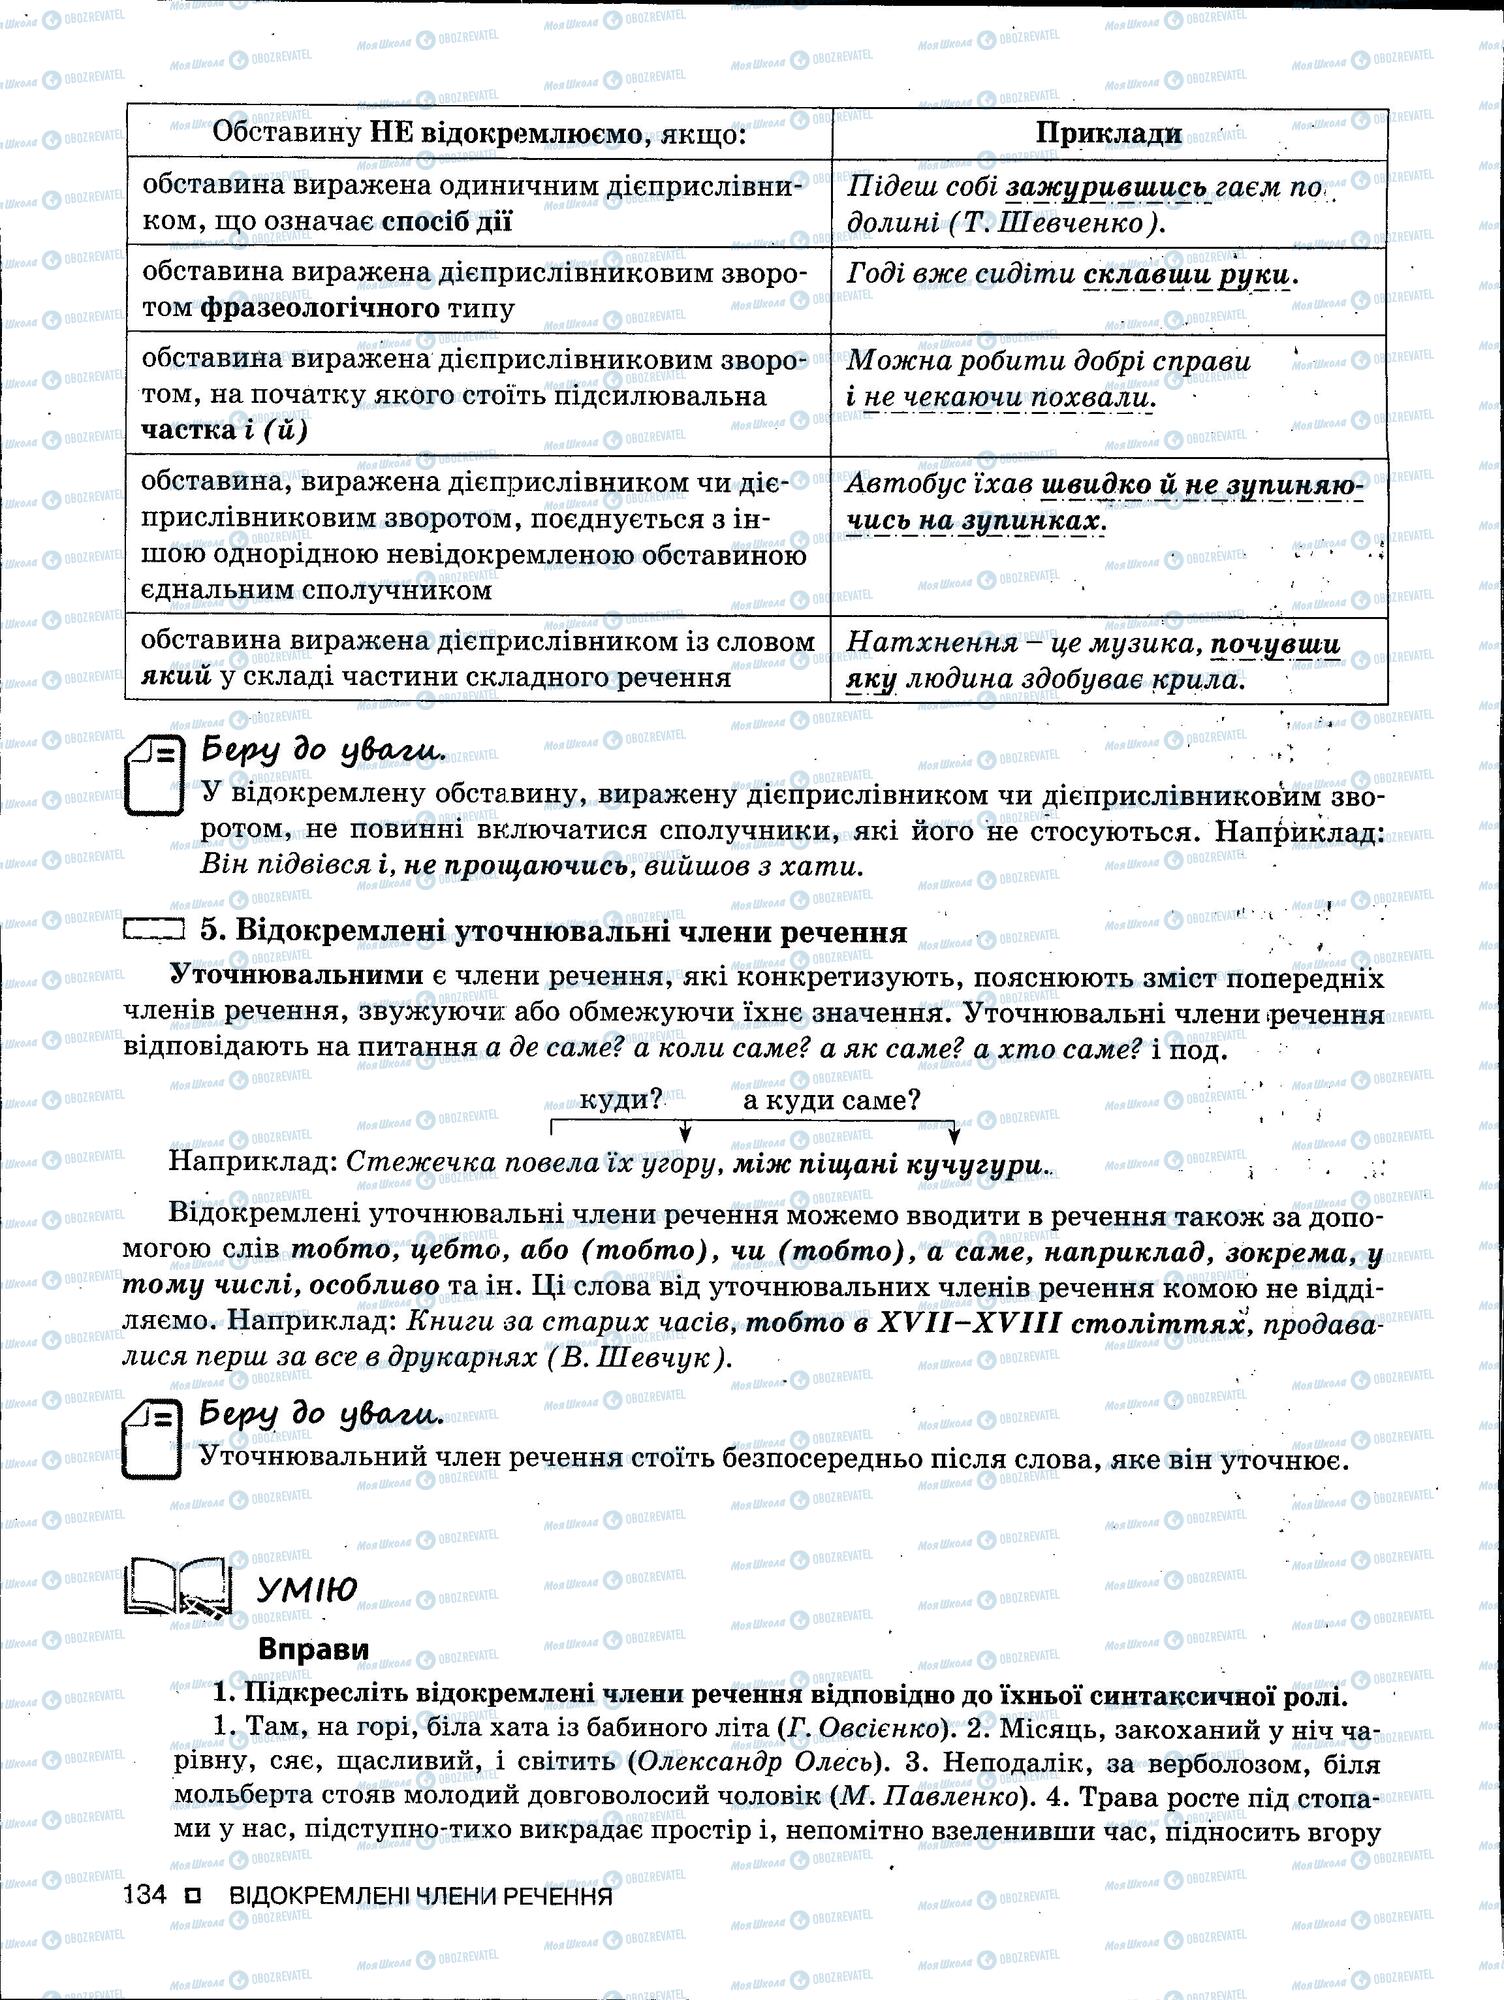 ЗНО Укр мова 11 класс страница 134